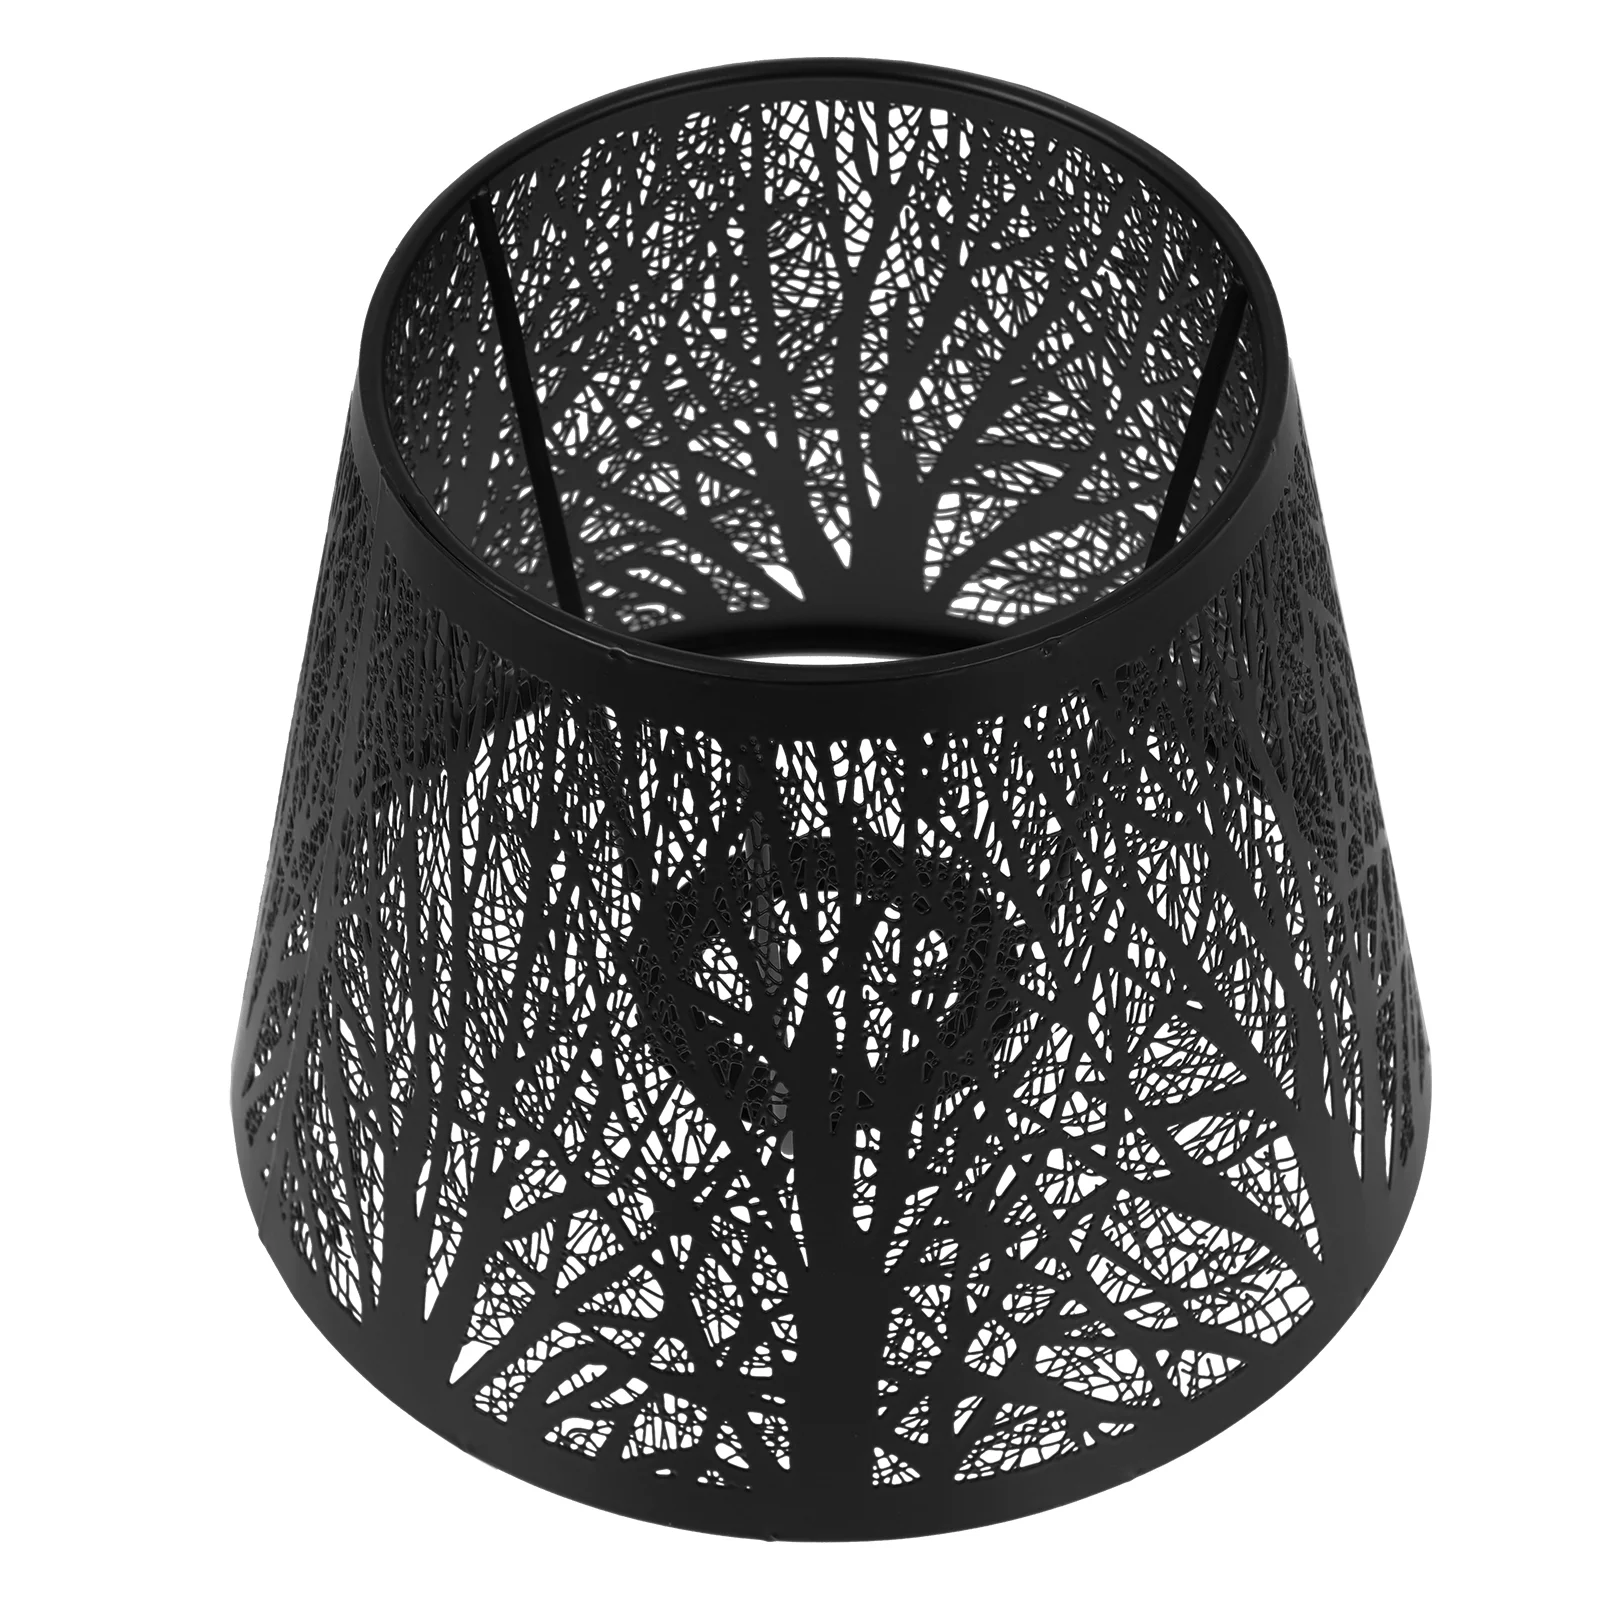 1Pc Baum Schatten Lampenschirm Kreative Licht Abdeckung Lampe Abdeckung Tisch Licht Abdeckung Kronleuchter Zubehör Decor